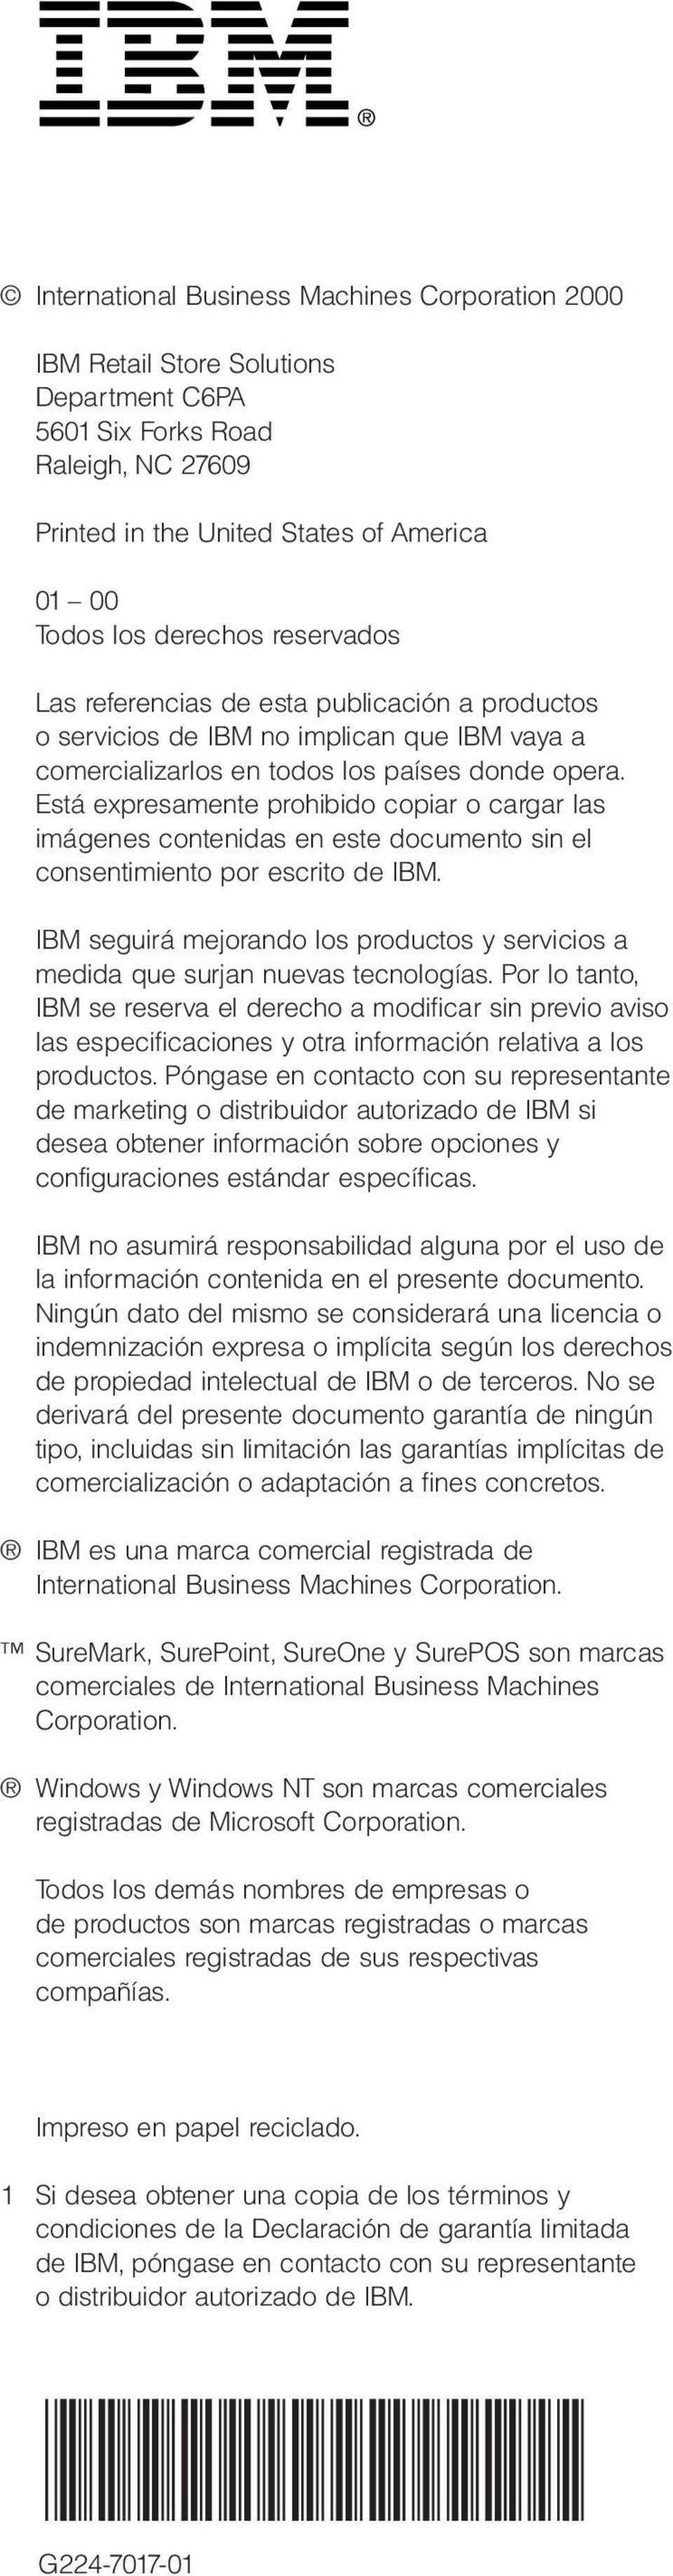 Está expresamente prohibido copiar o cargar las imágenes contenidas en este documento sin el consentimiento por escrito de IBM.